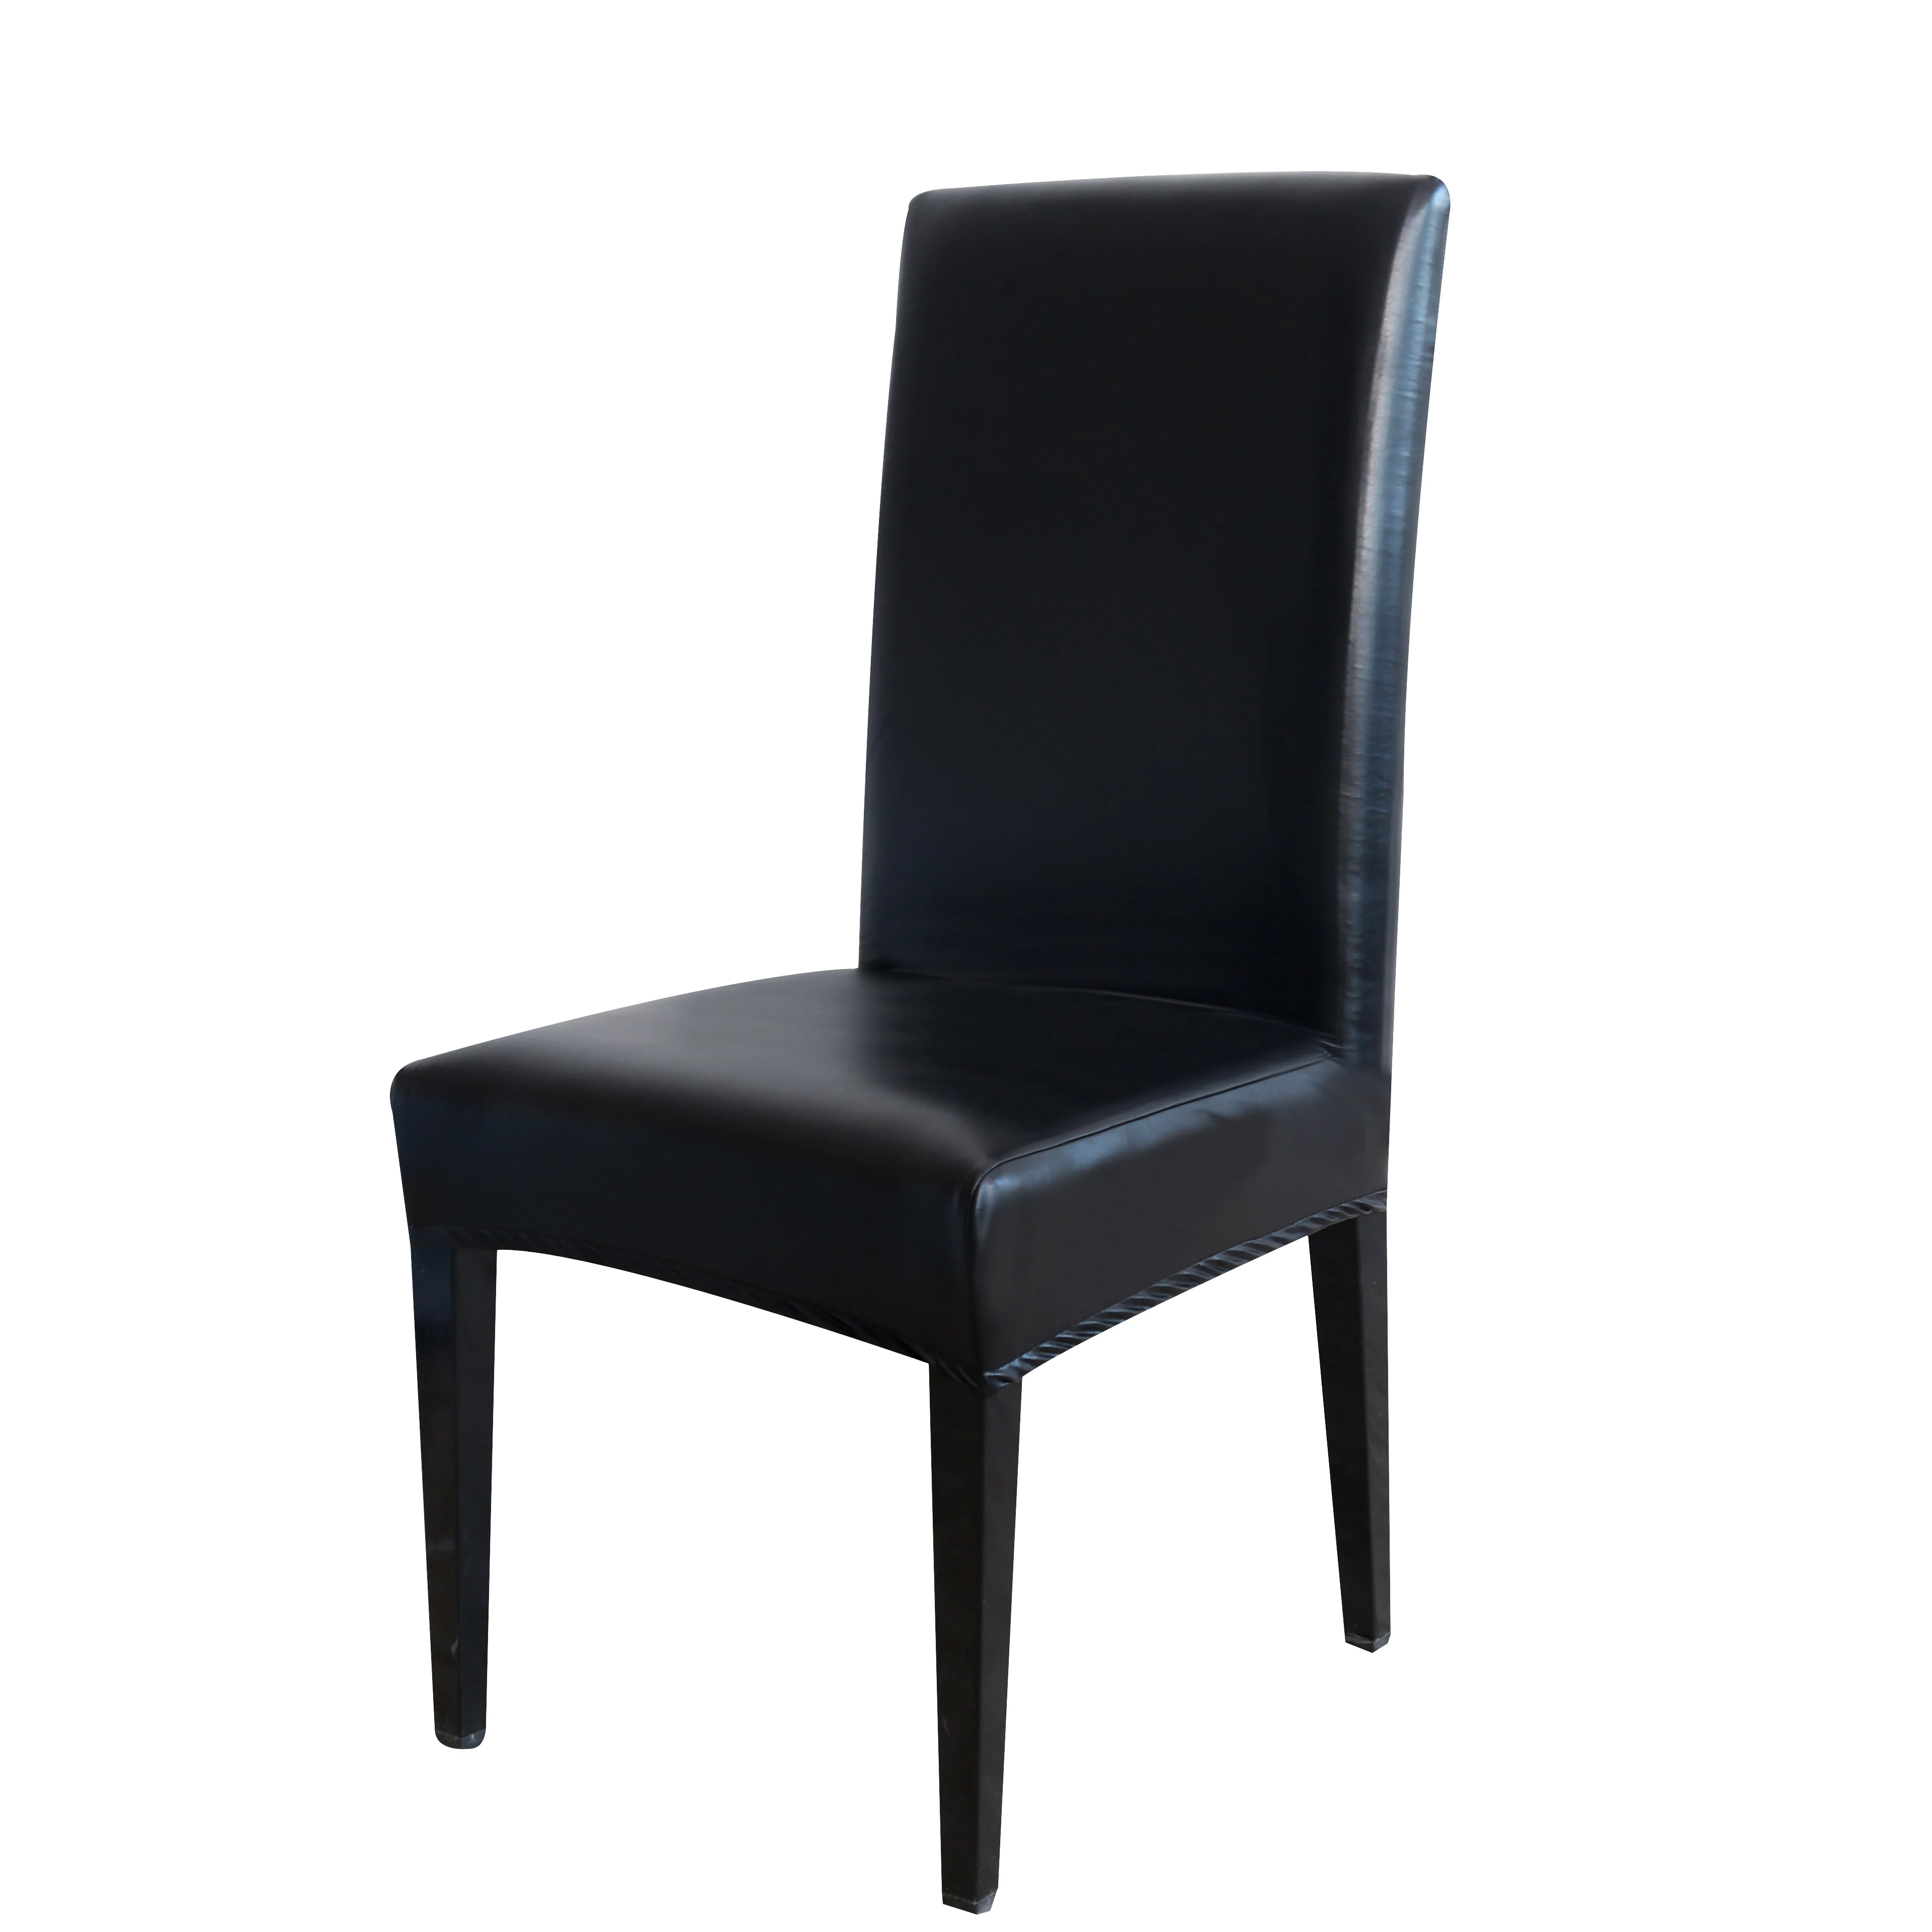 Стул из ПУ кожи Покрытие чистого цвета чехлы для стульев водонепроницаемый столовый набор чехлы для стульев гостиничные банкетные чехлы протектор стула CoverD30 - Цвет: Черный